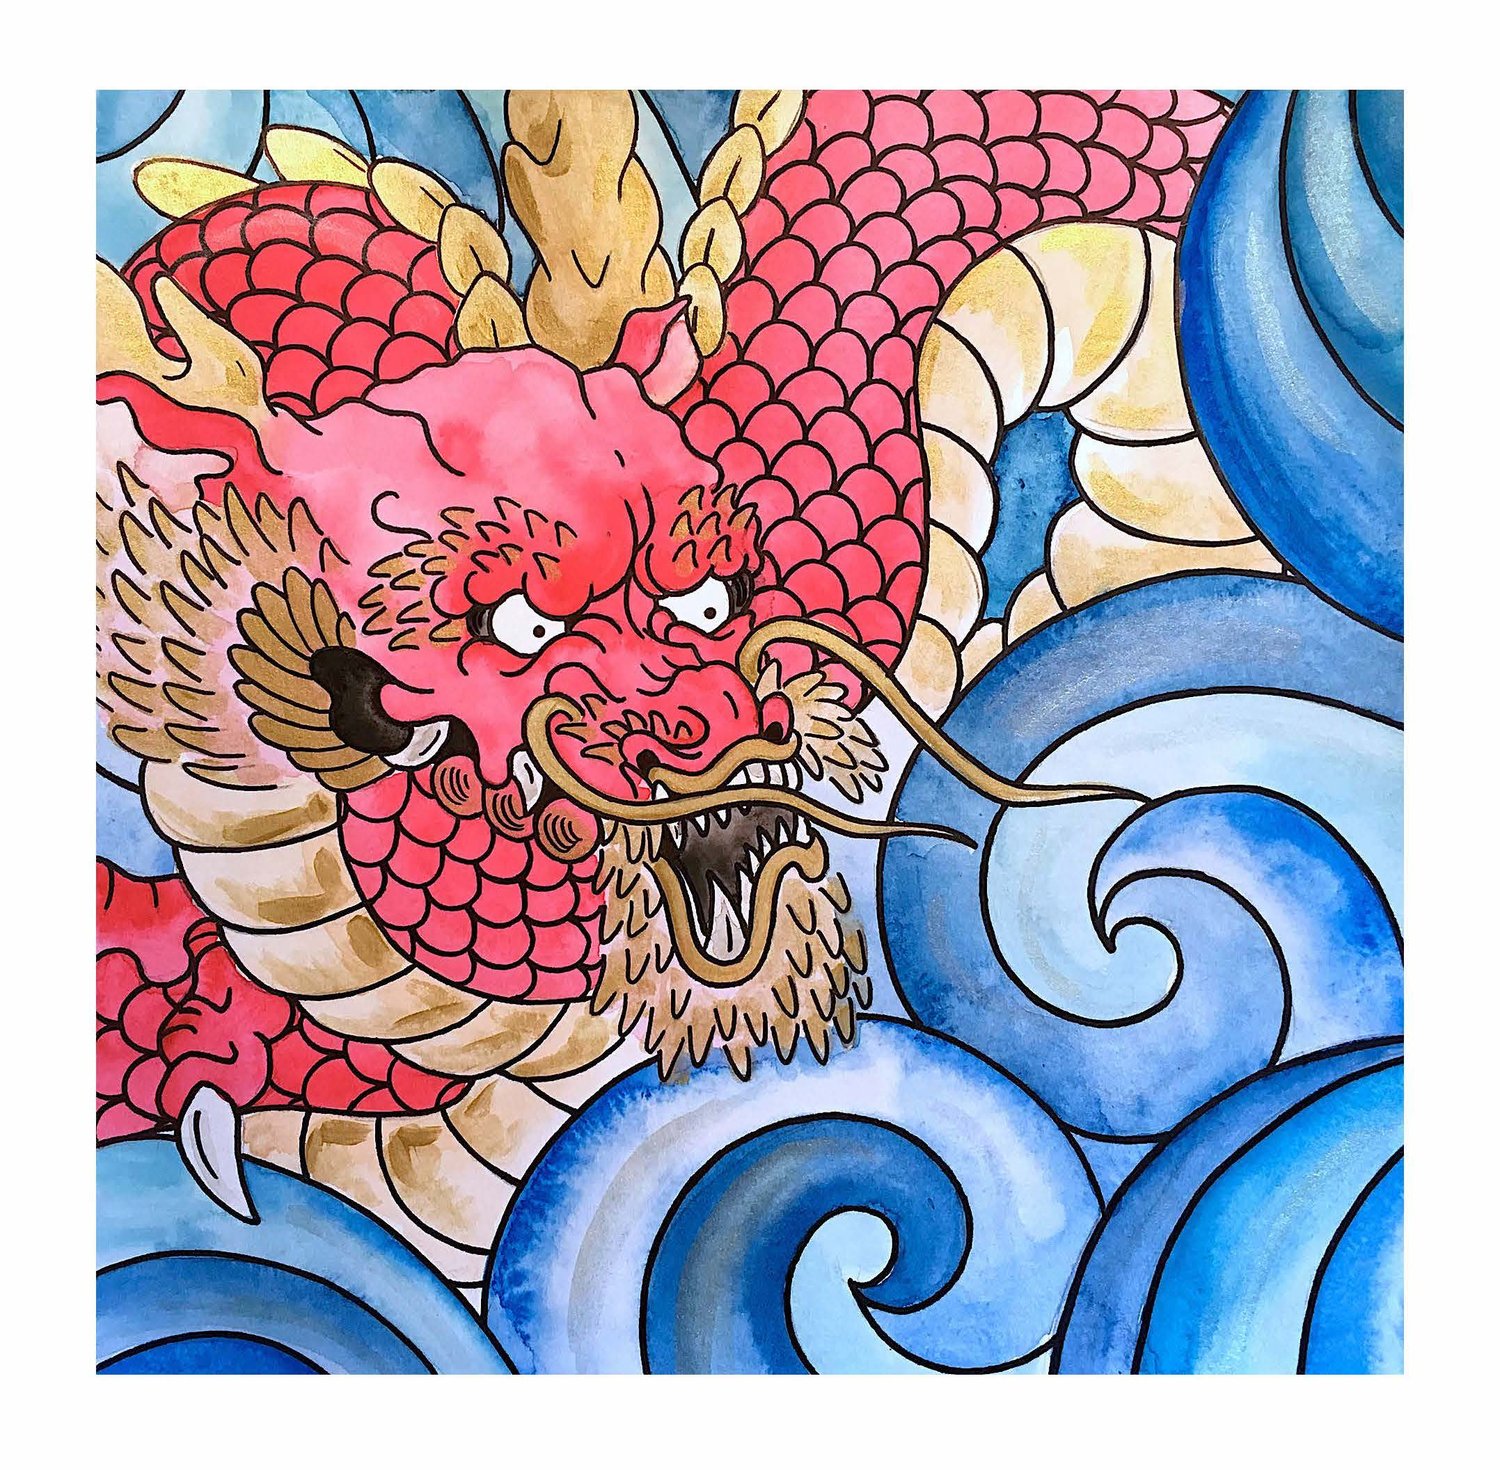 Dragon Print